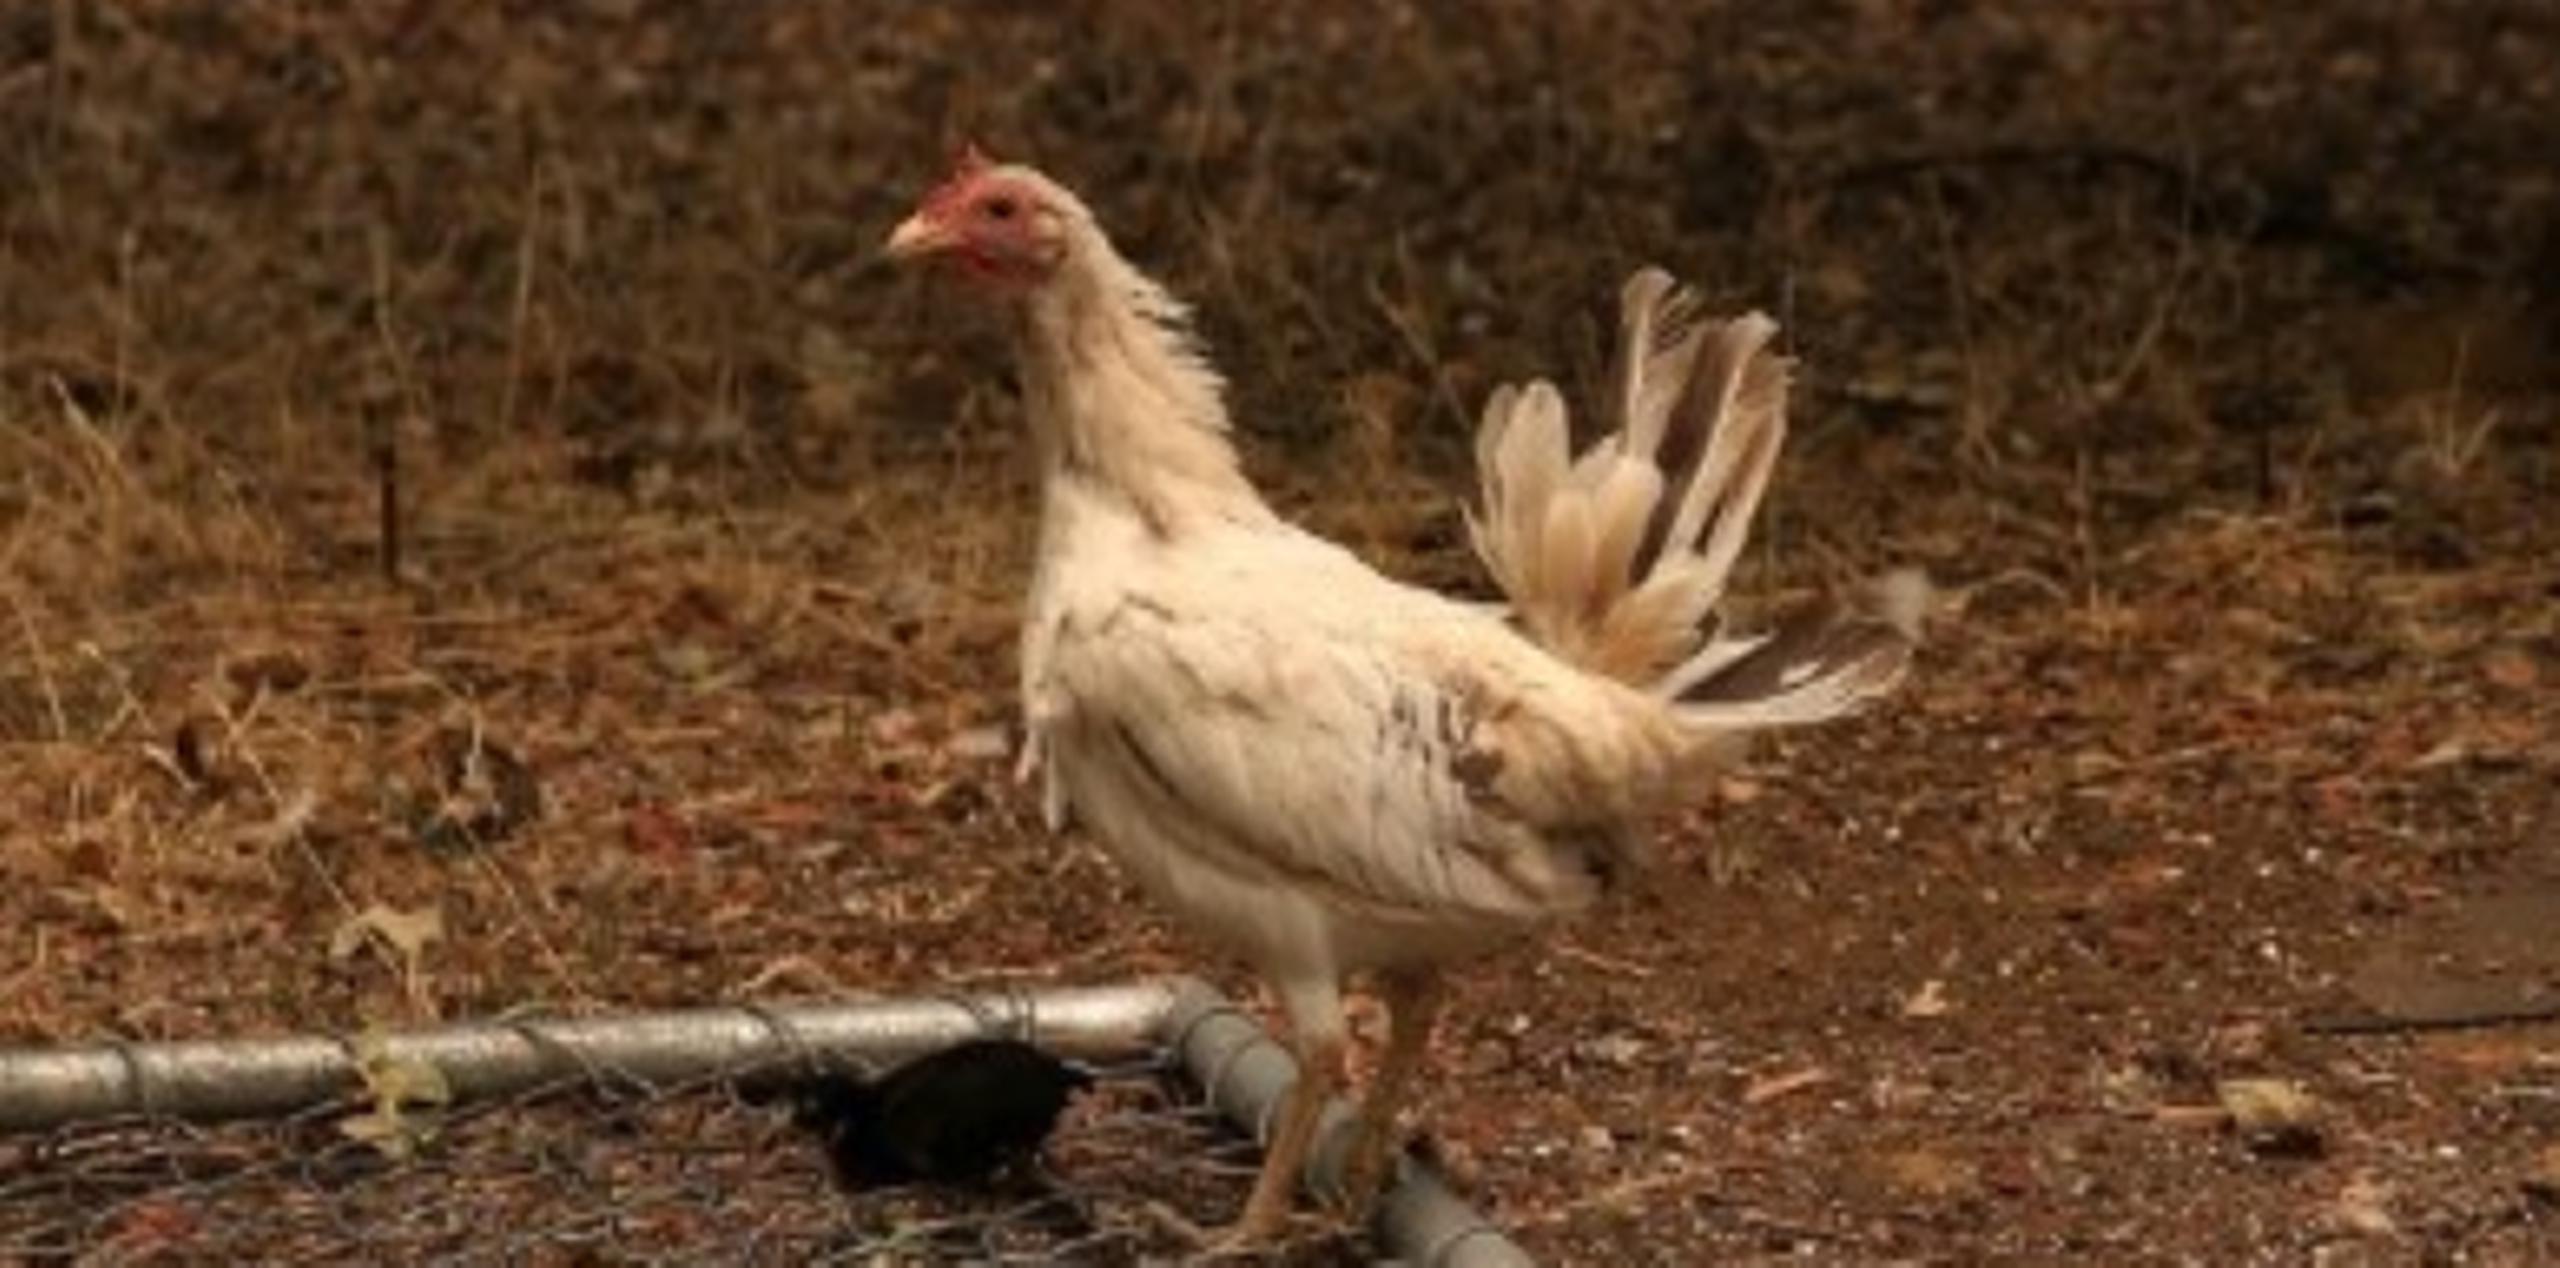 El ave nació con un tendón dañado en la pata que la vuelve inútil. (AFP)